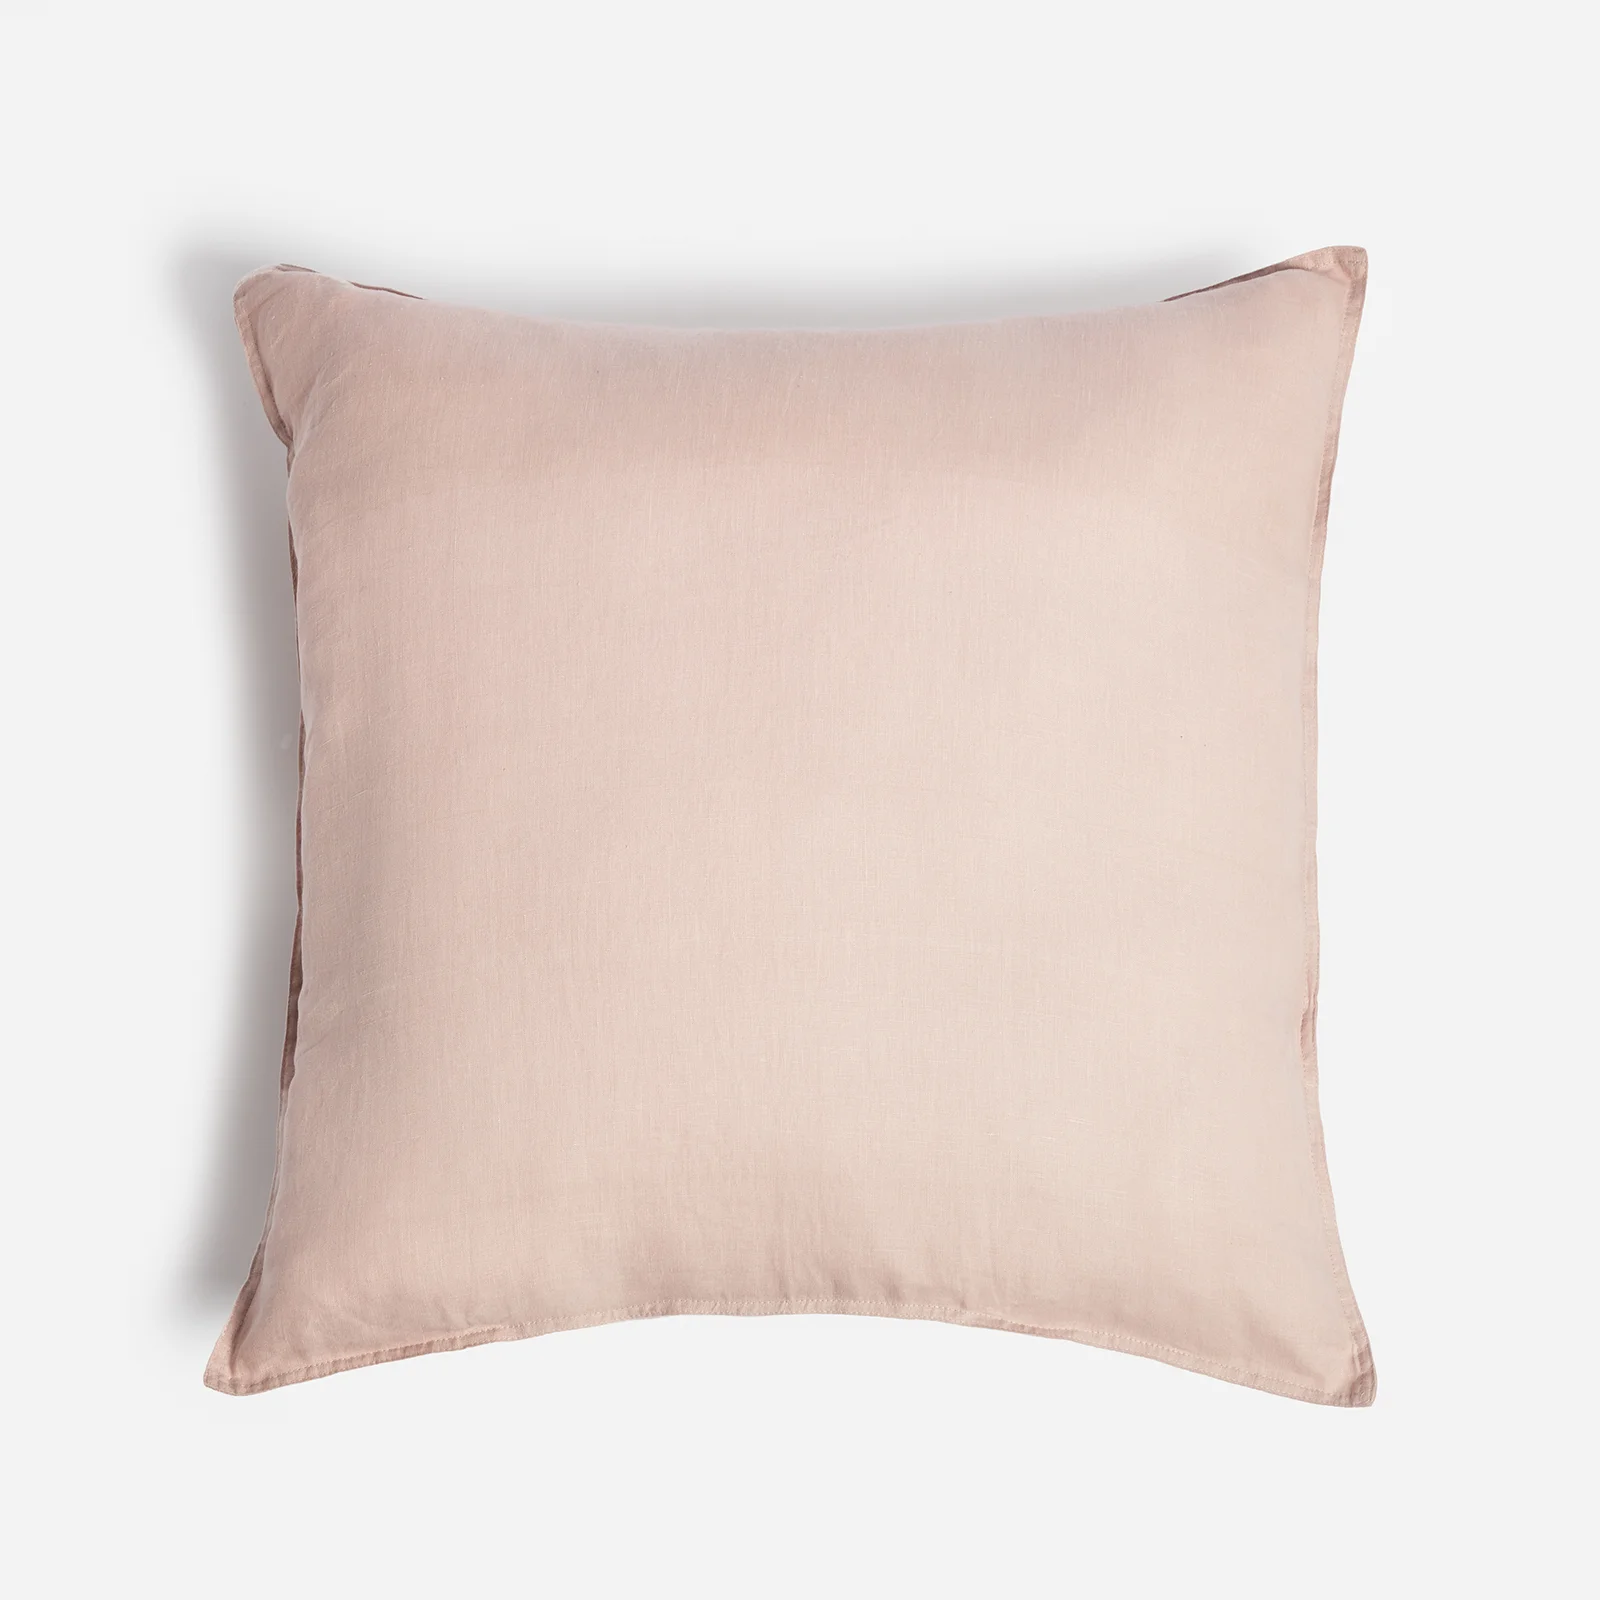 ïn home Linen Cushion - Pink - 65x65cm Image 1